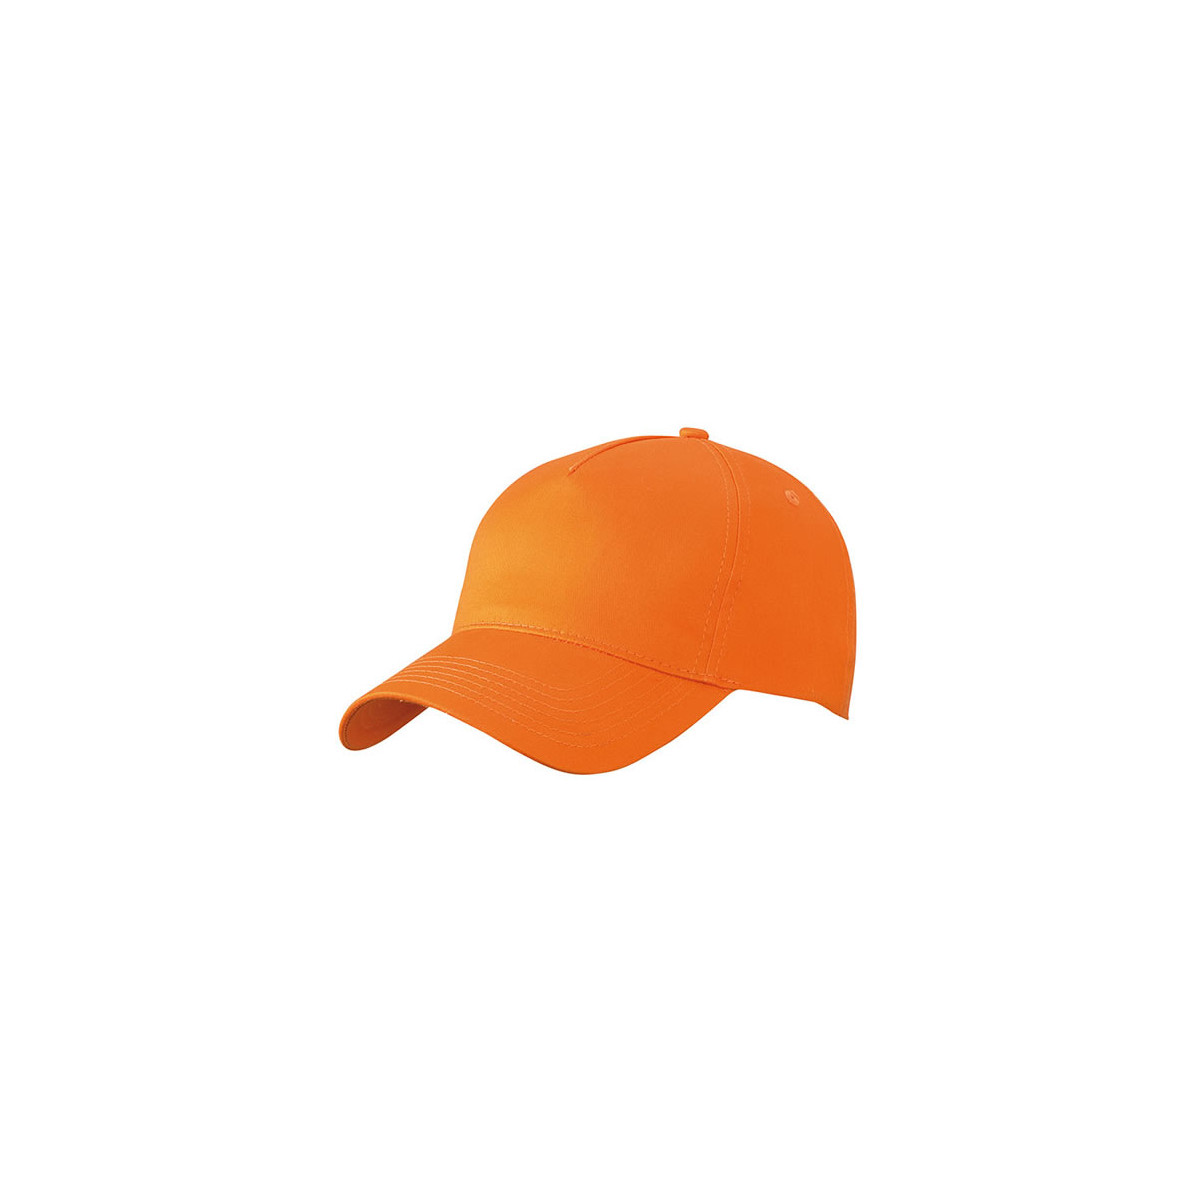 czapki-bhp-z-daszkiem - Czapka z daszkiem pomarańczowa orange pięciopanelowa